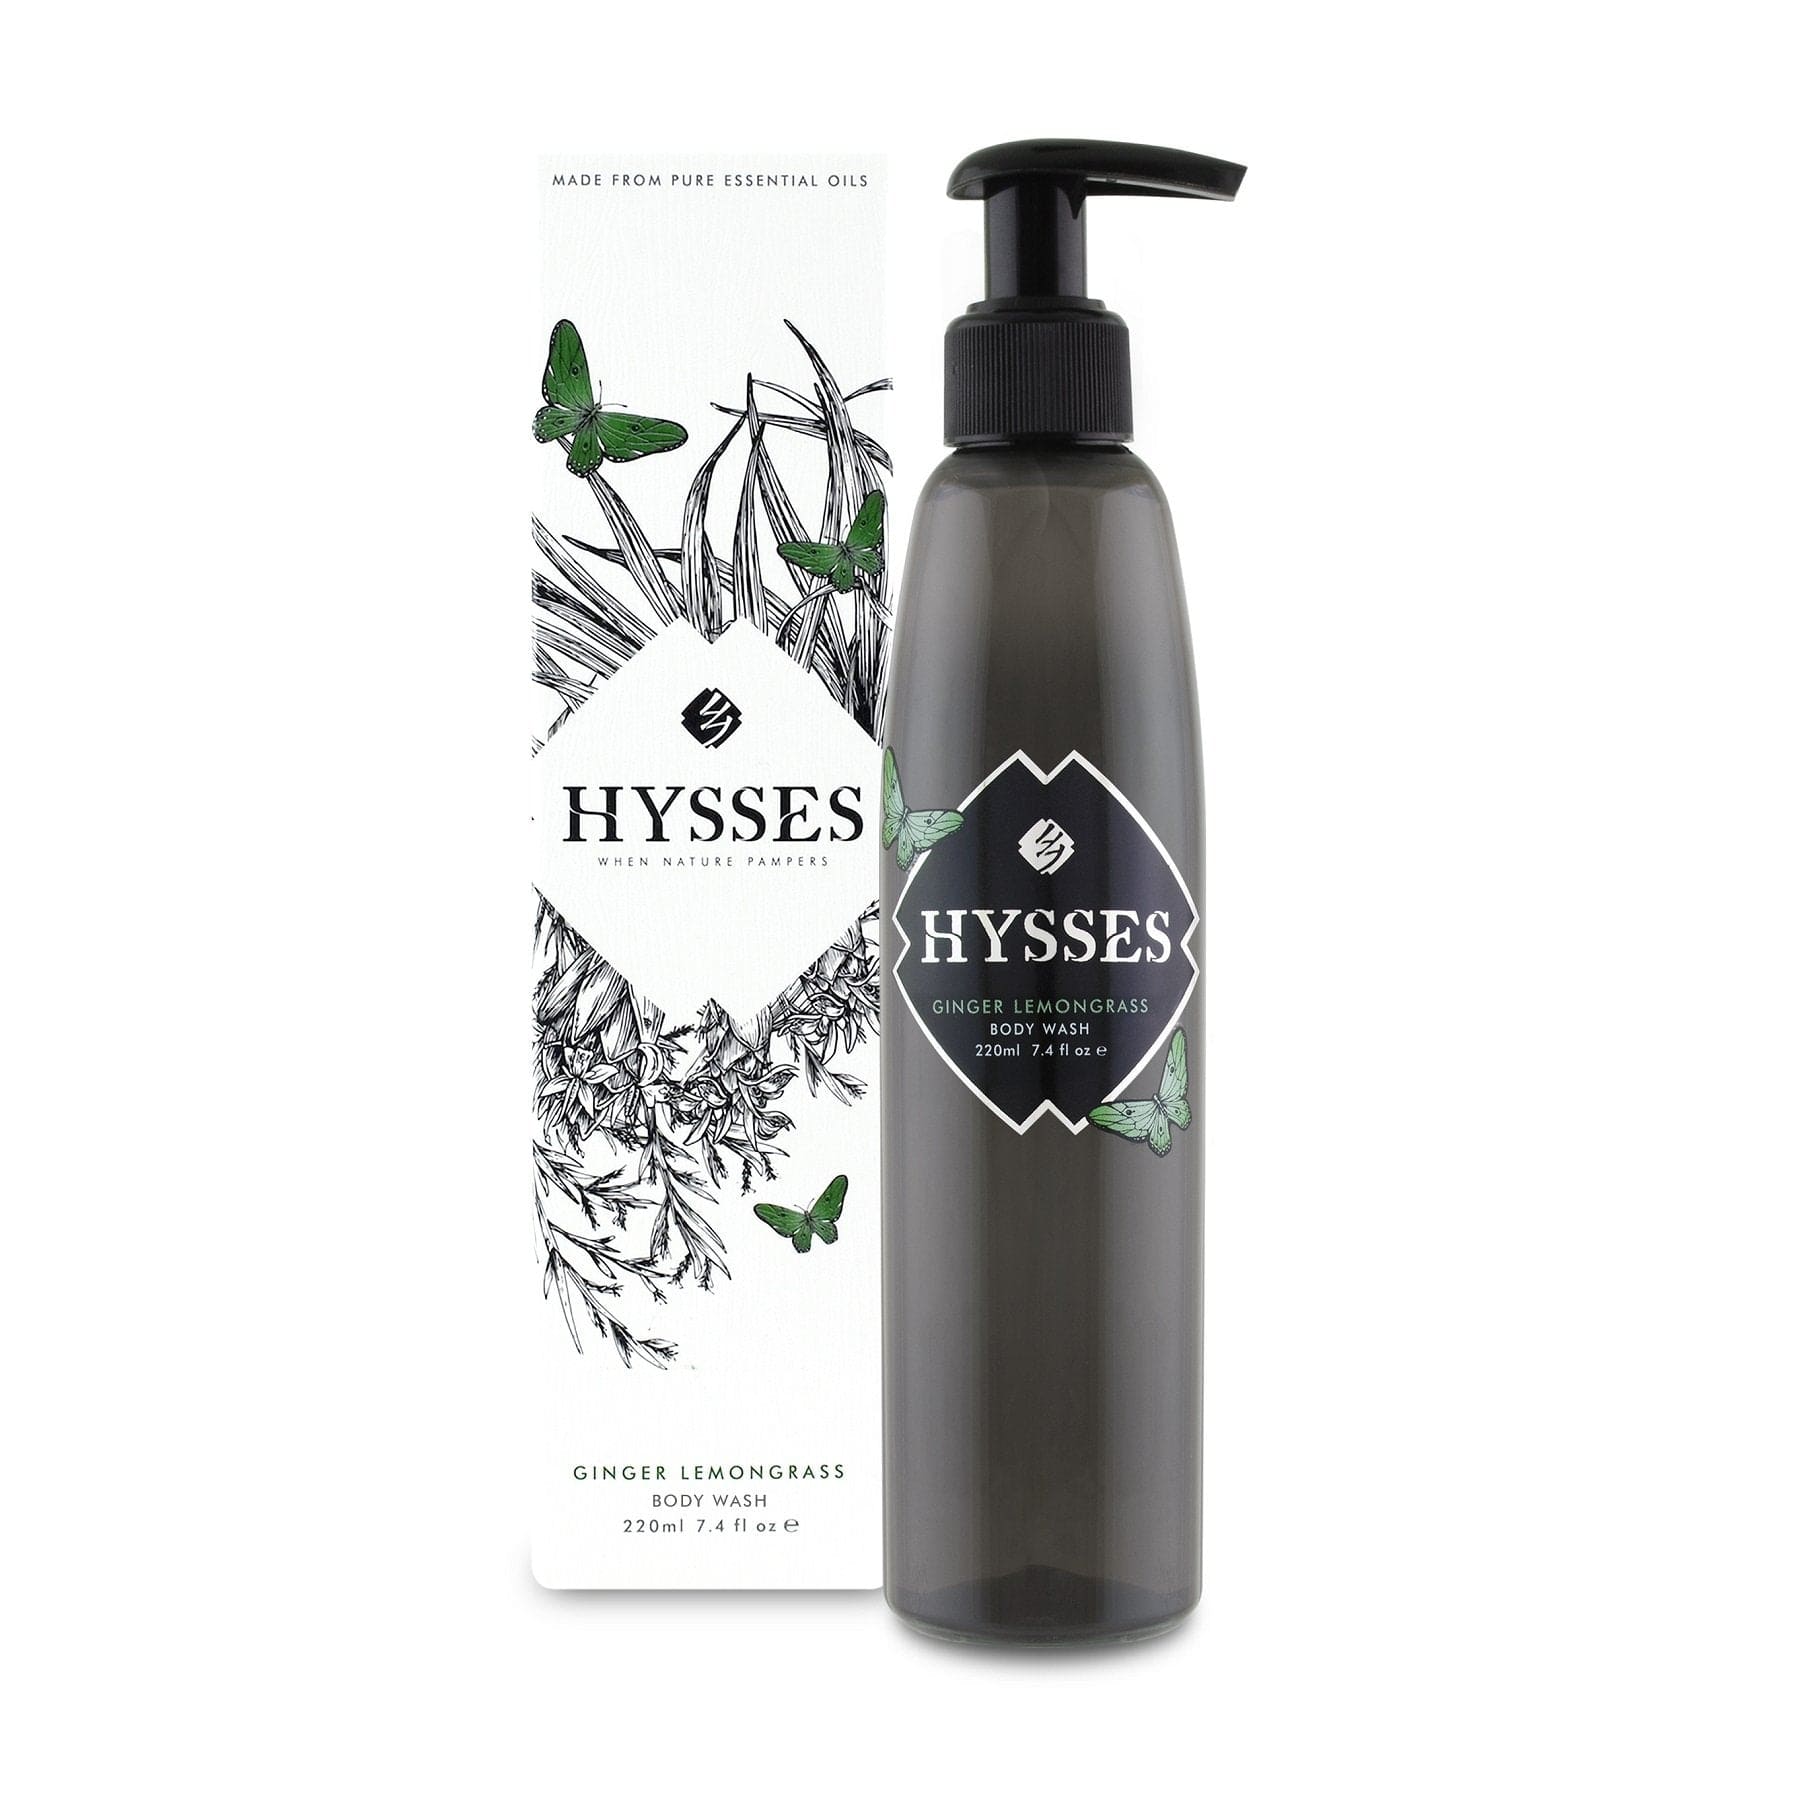 Hysses Body Care 220ml Body Wash Ginger Lemongrass